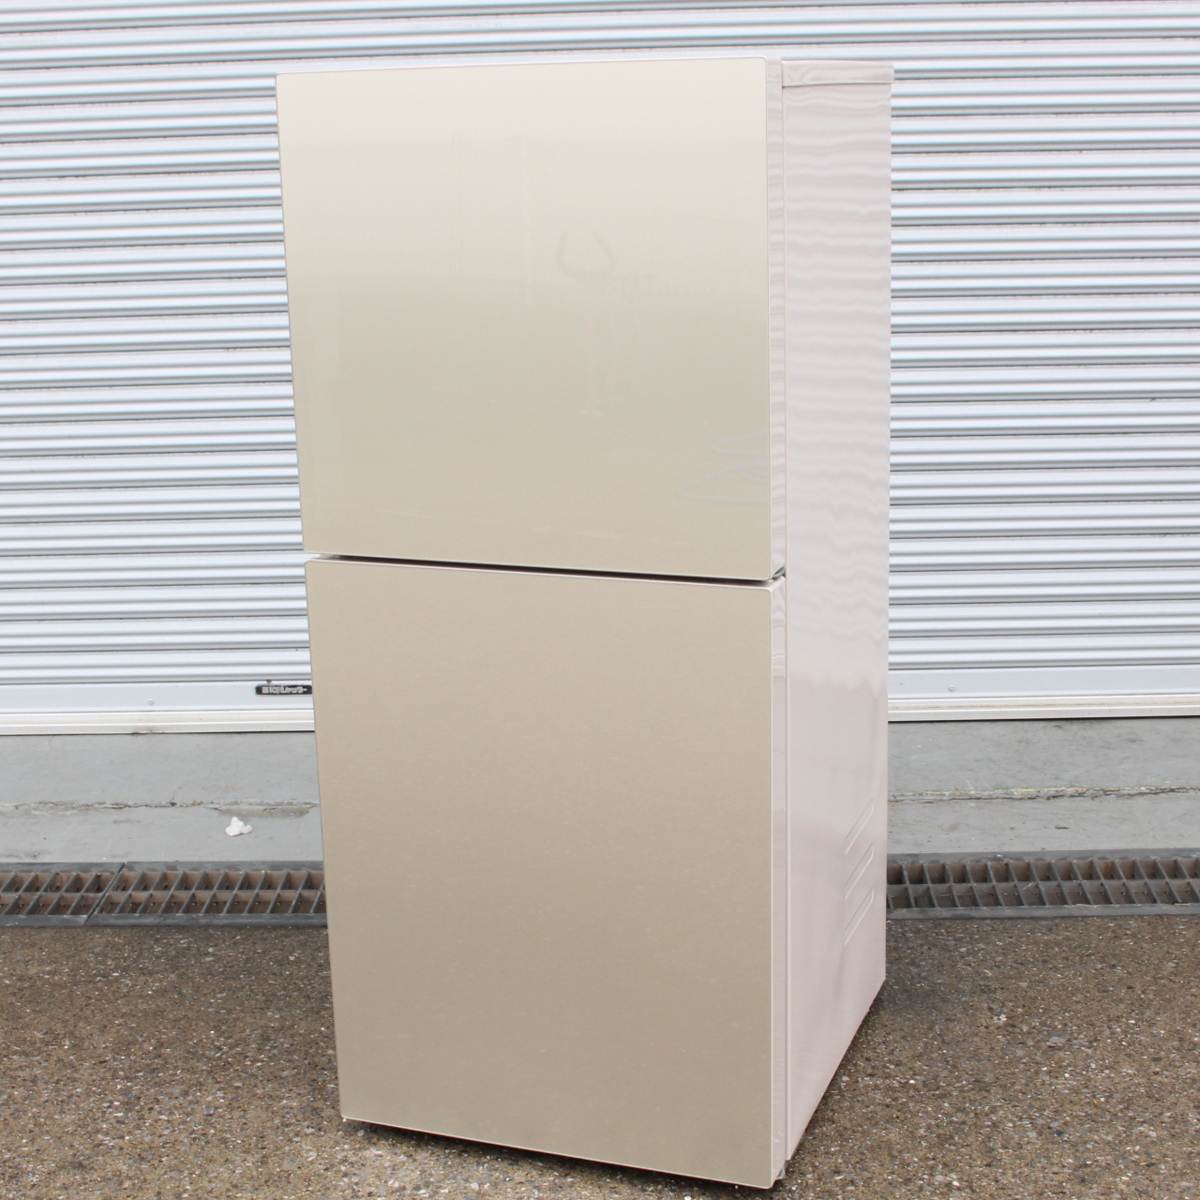 東京都中央区にて ツインバード 冷蔵庫 KHR-EJ15 2019年製 を出張買取させて頂きました。